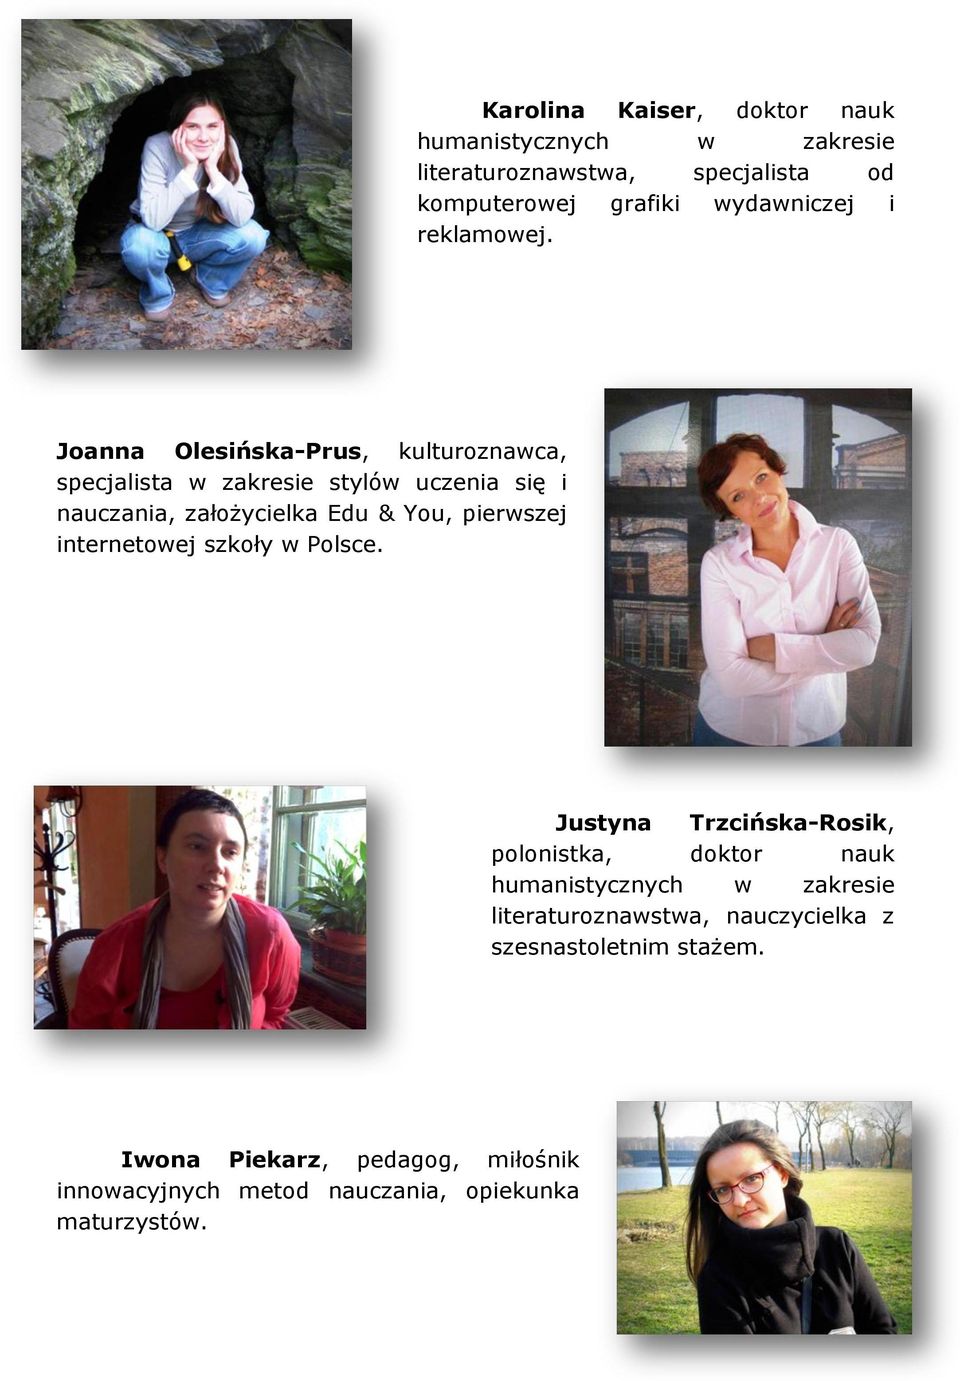 Joanna Olesińska-Prus, kulturoznawca, specjalista w zakresie stylów uczenia się i nauczania, założycielka Edu & You, pierwszej